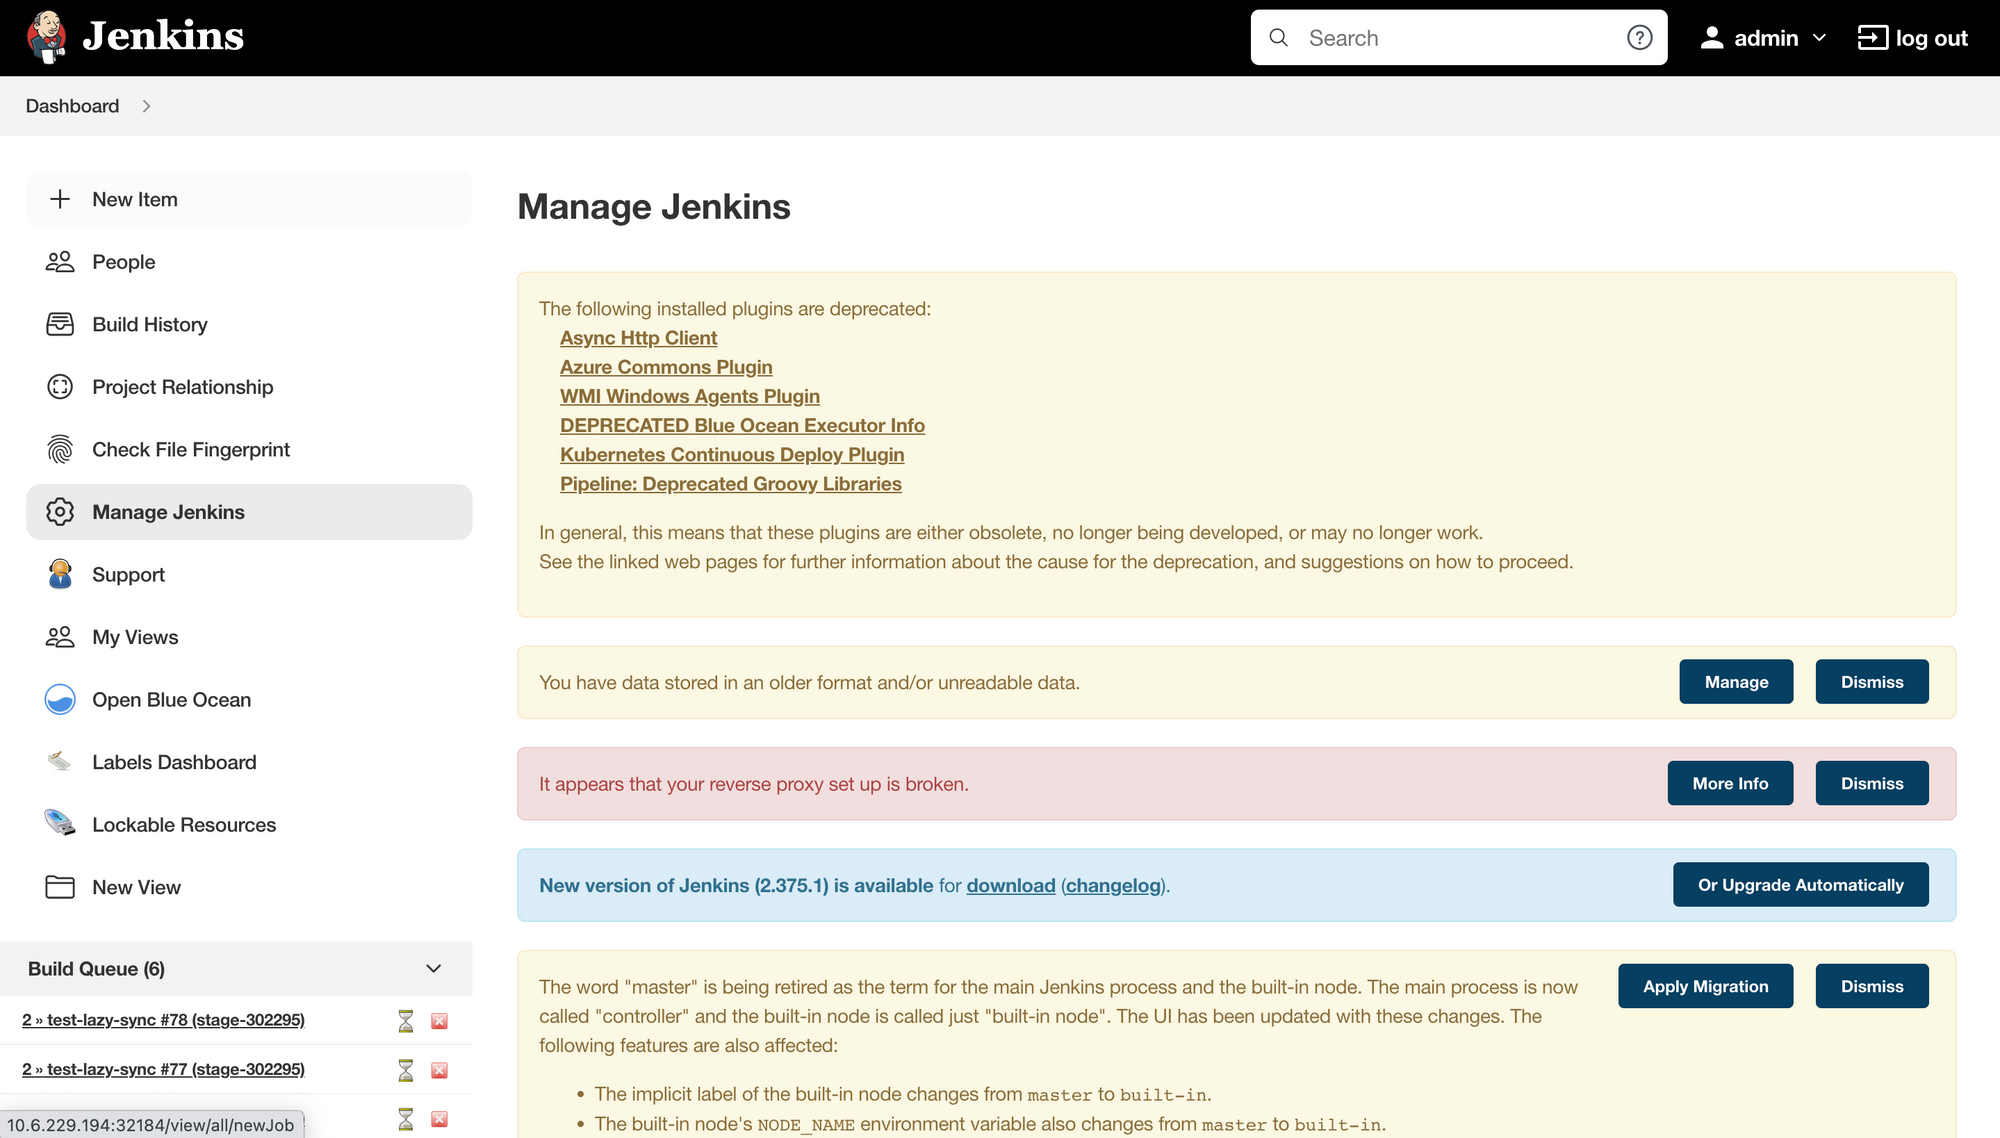 manage jennkins